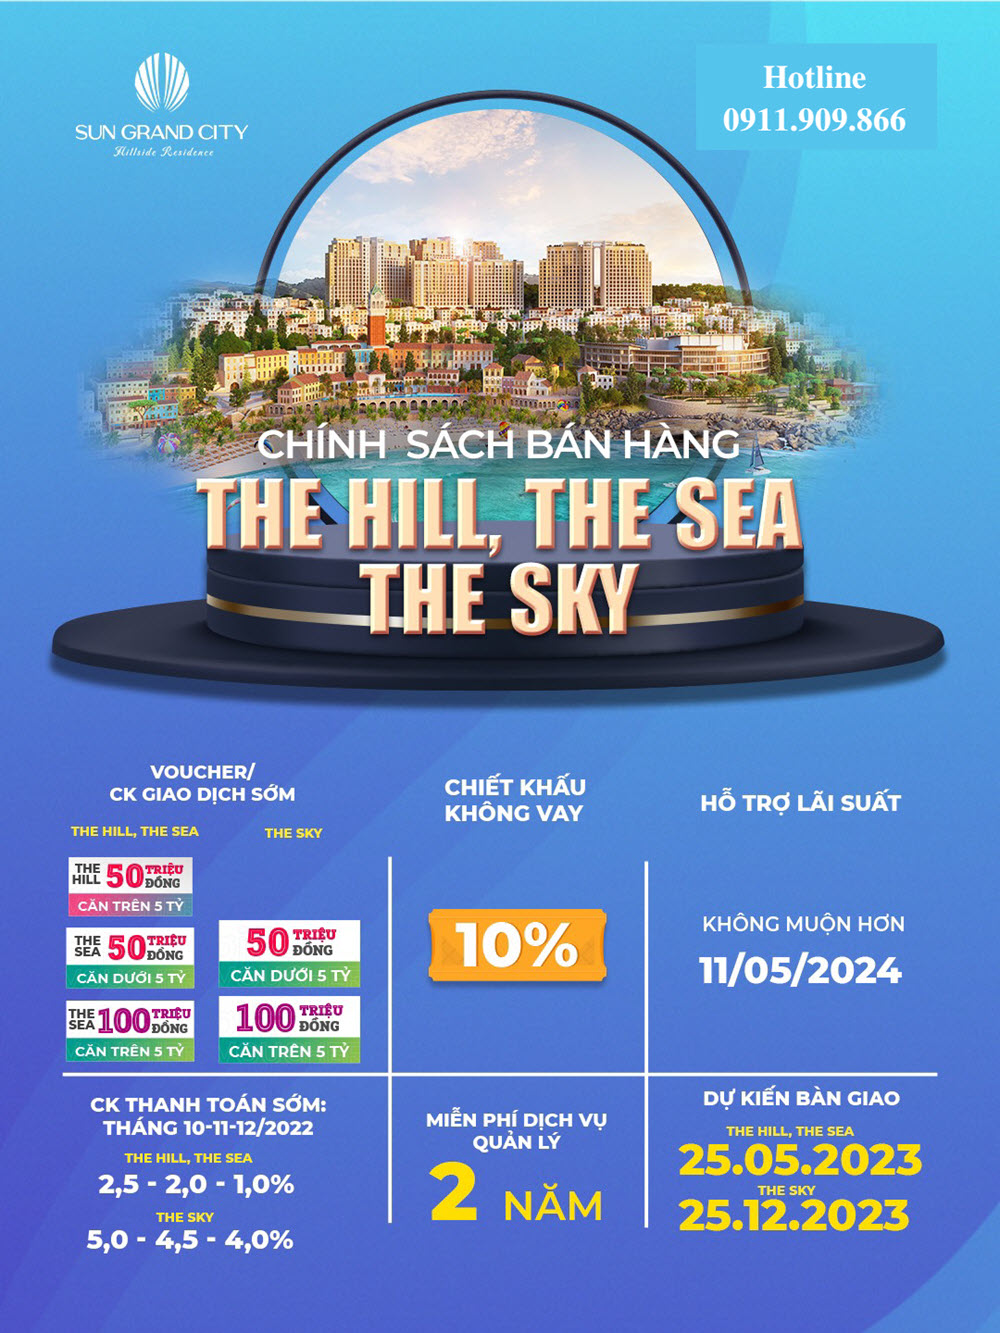 Chính sách bán hàng căn hộ The Hill, The Sea và The Sky Phú Quốc